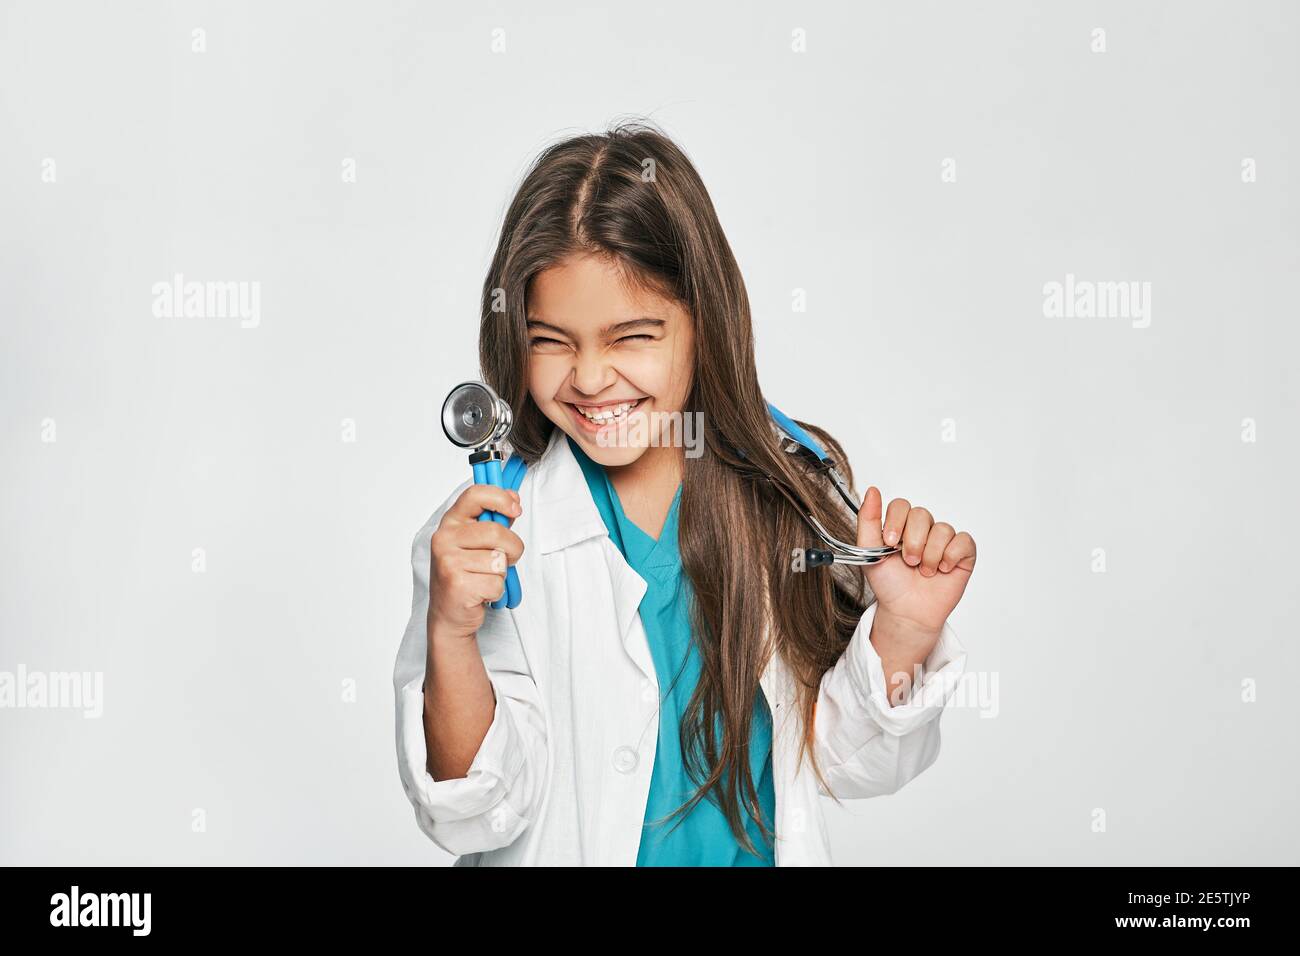 Portrait de race mixte petite fille vêtue comme un docteur avec stéthoscope dans sa main, elle pose, souriant et regardant l'appareil photo. Isolé sur blanc Banque D'Images